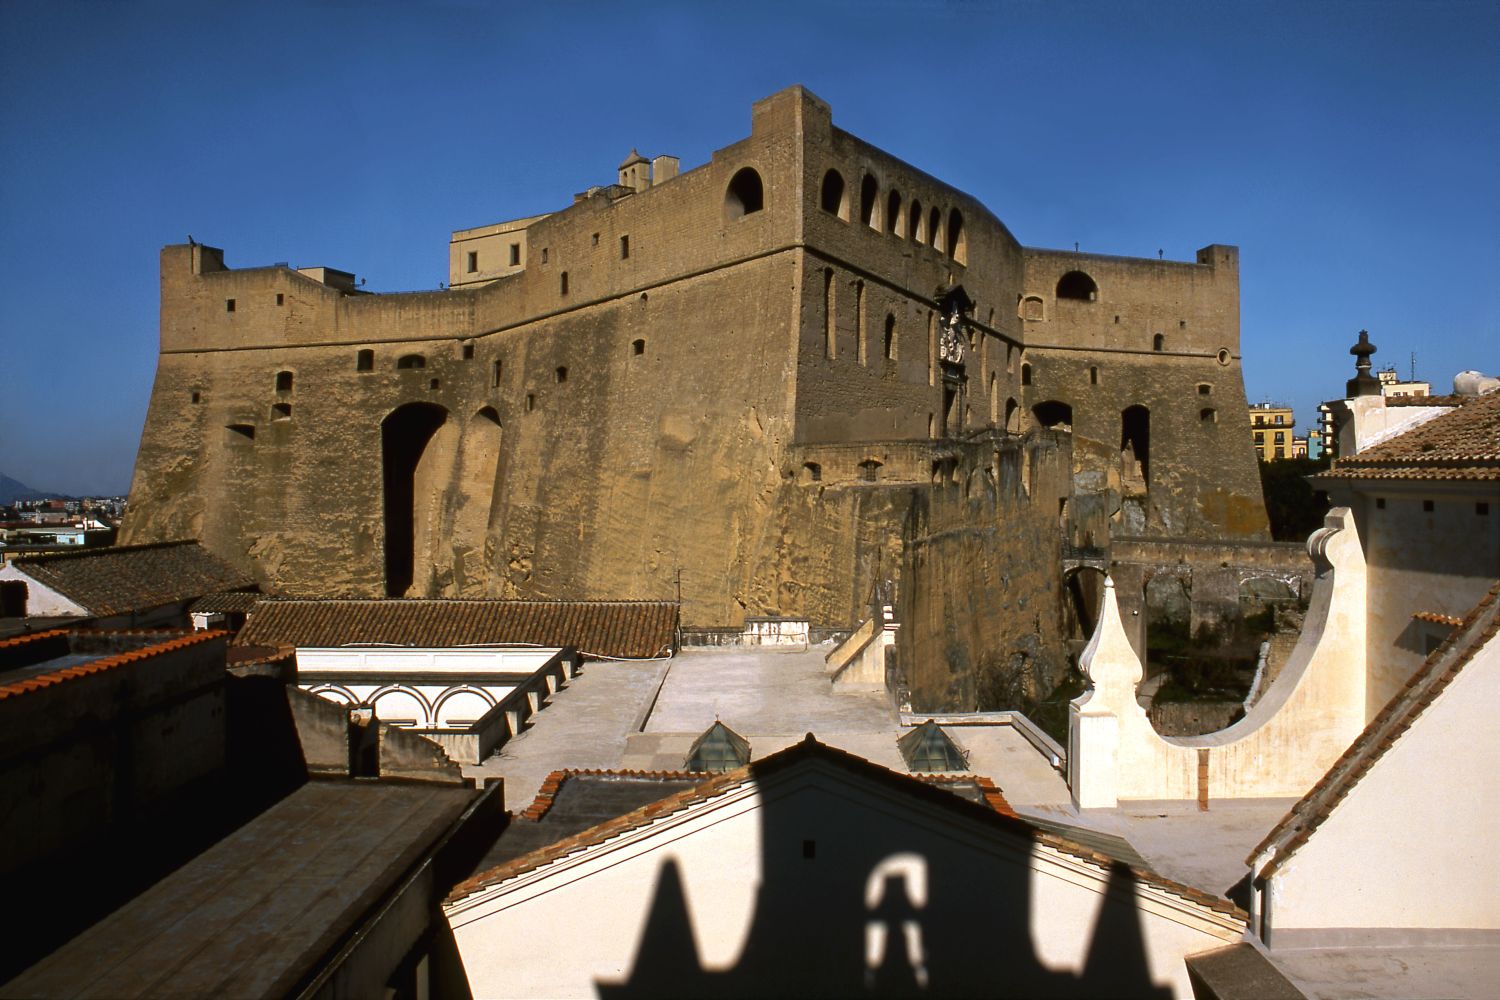  A Castel Sant’Elmo Cosa resterà degli anni Ottanta Rewind: i racconti di un decennio